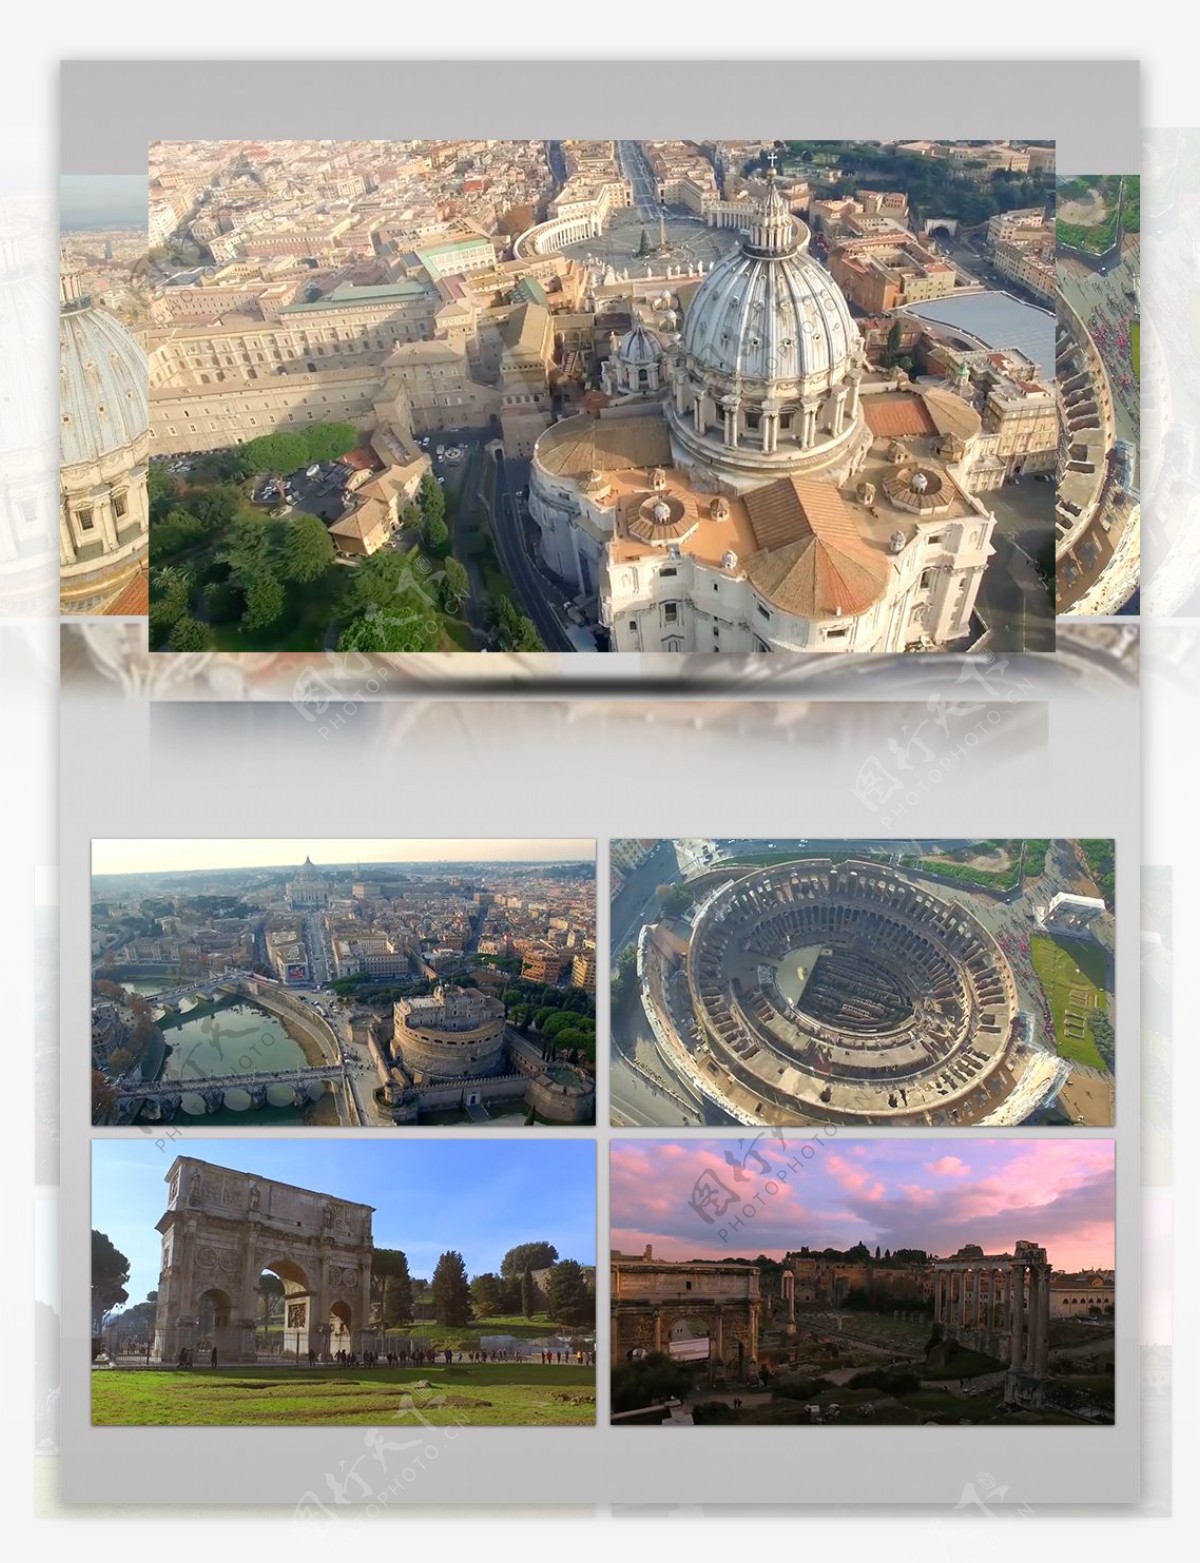 罗马城市景观无人机高清鸟瞰图